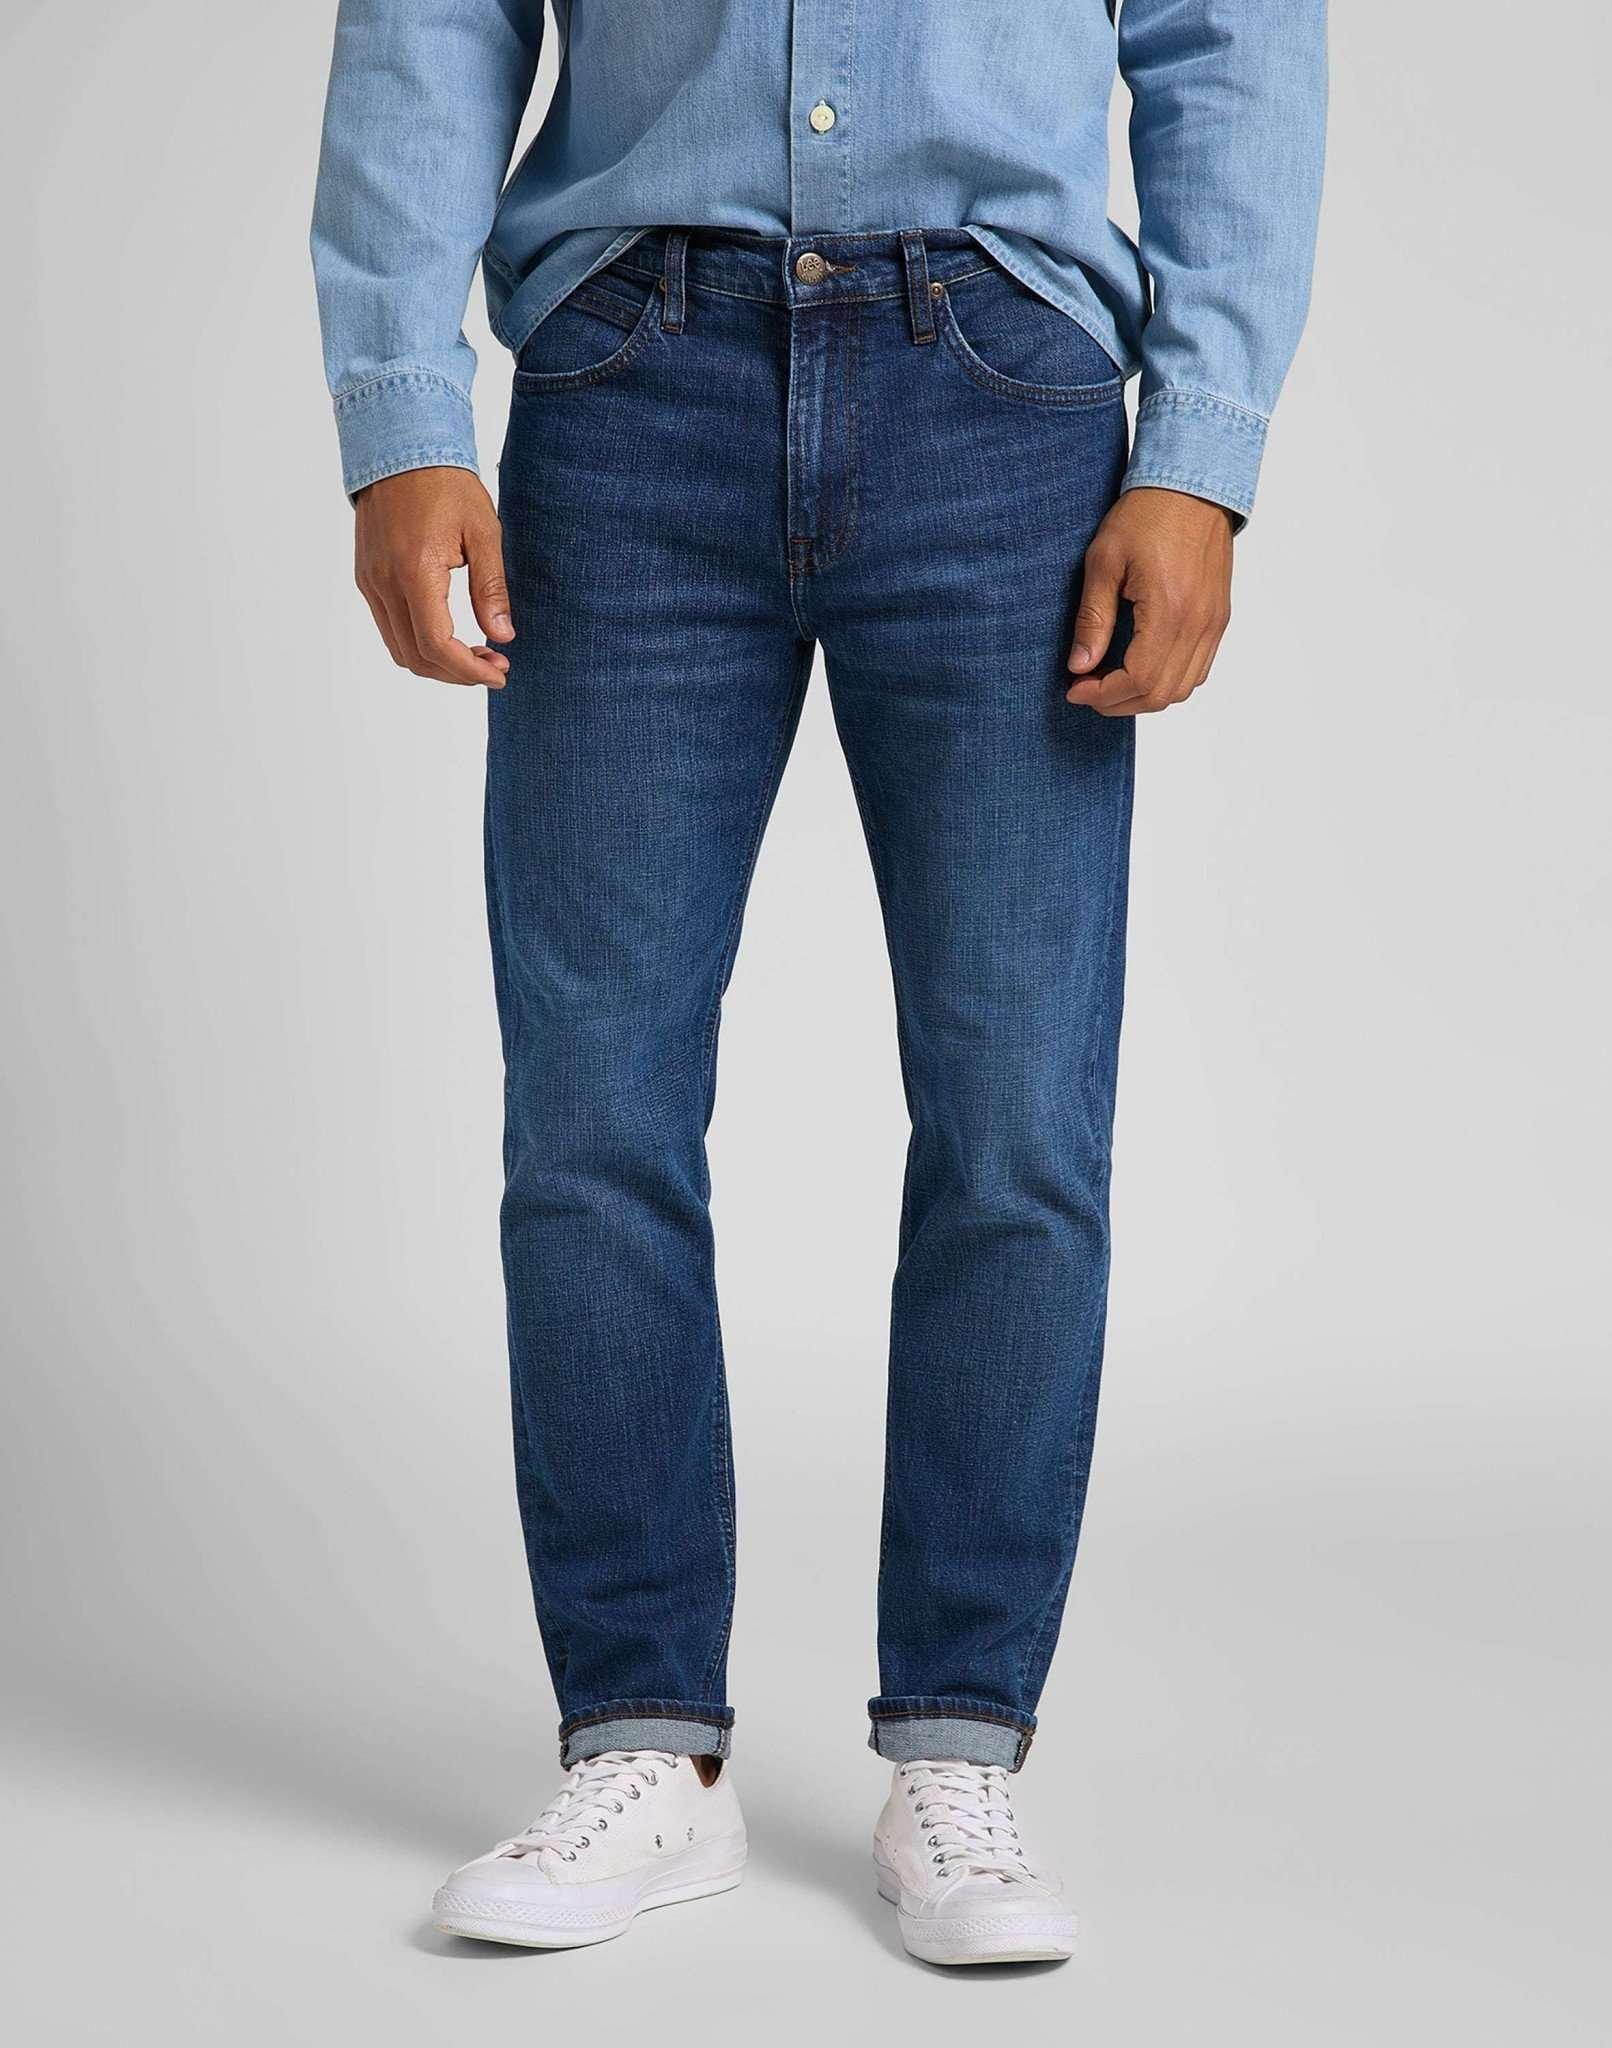 Jeans Straight Leg Austin Herren Blau Denim L30/W29 von Lee